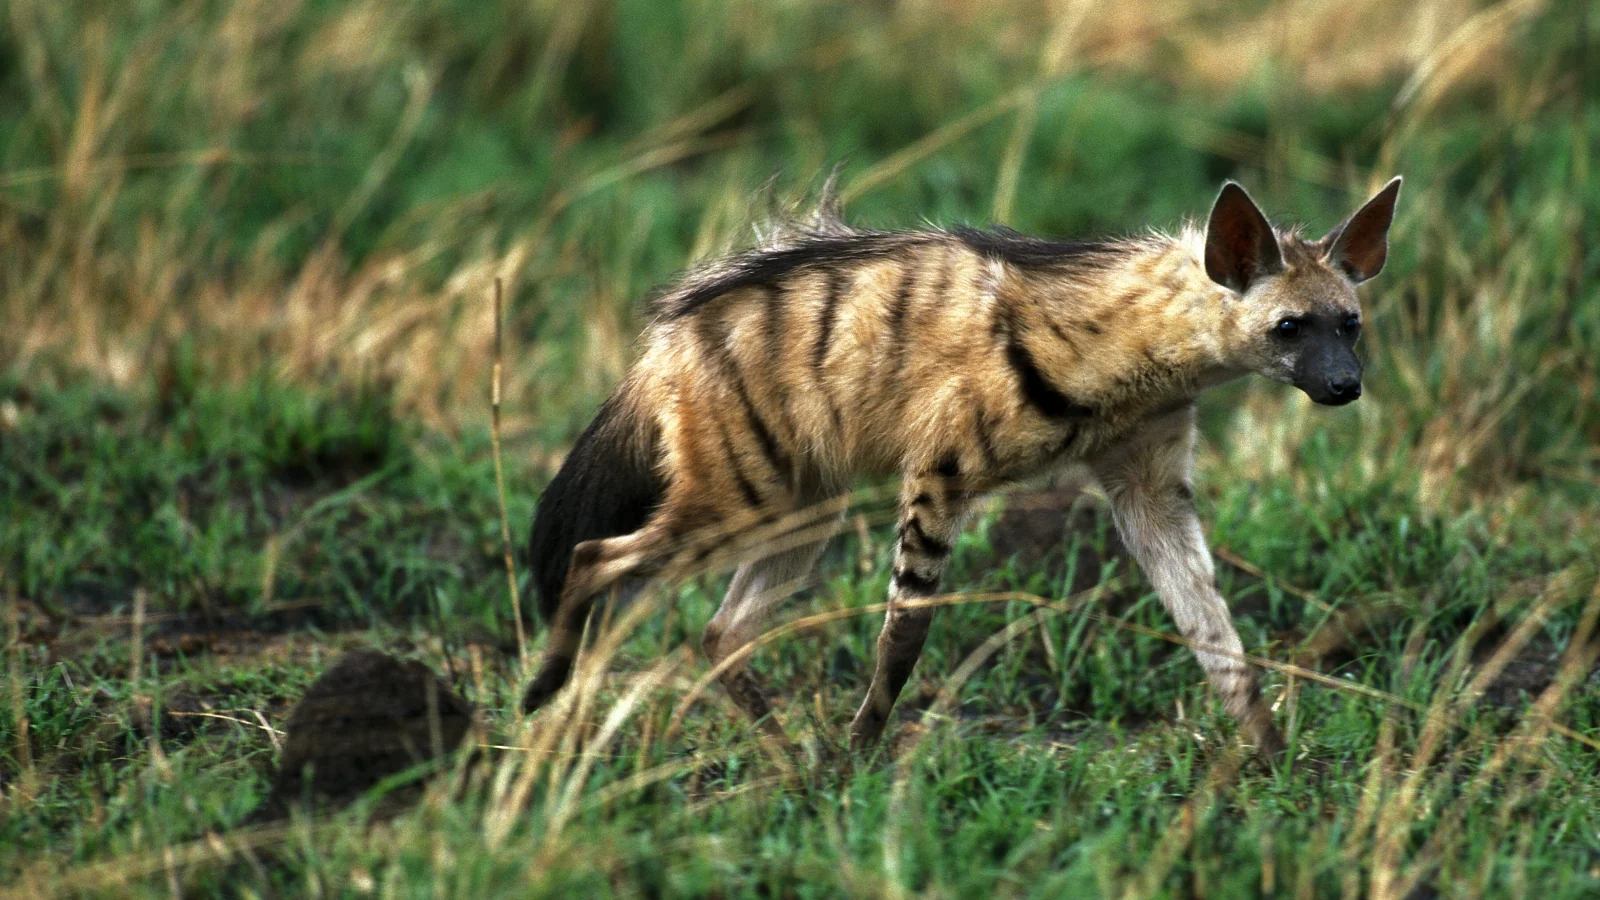 Aardwolf in grass: mammal conservation